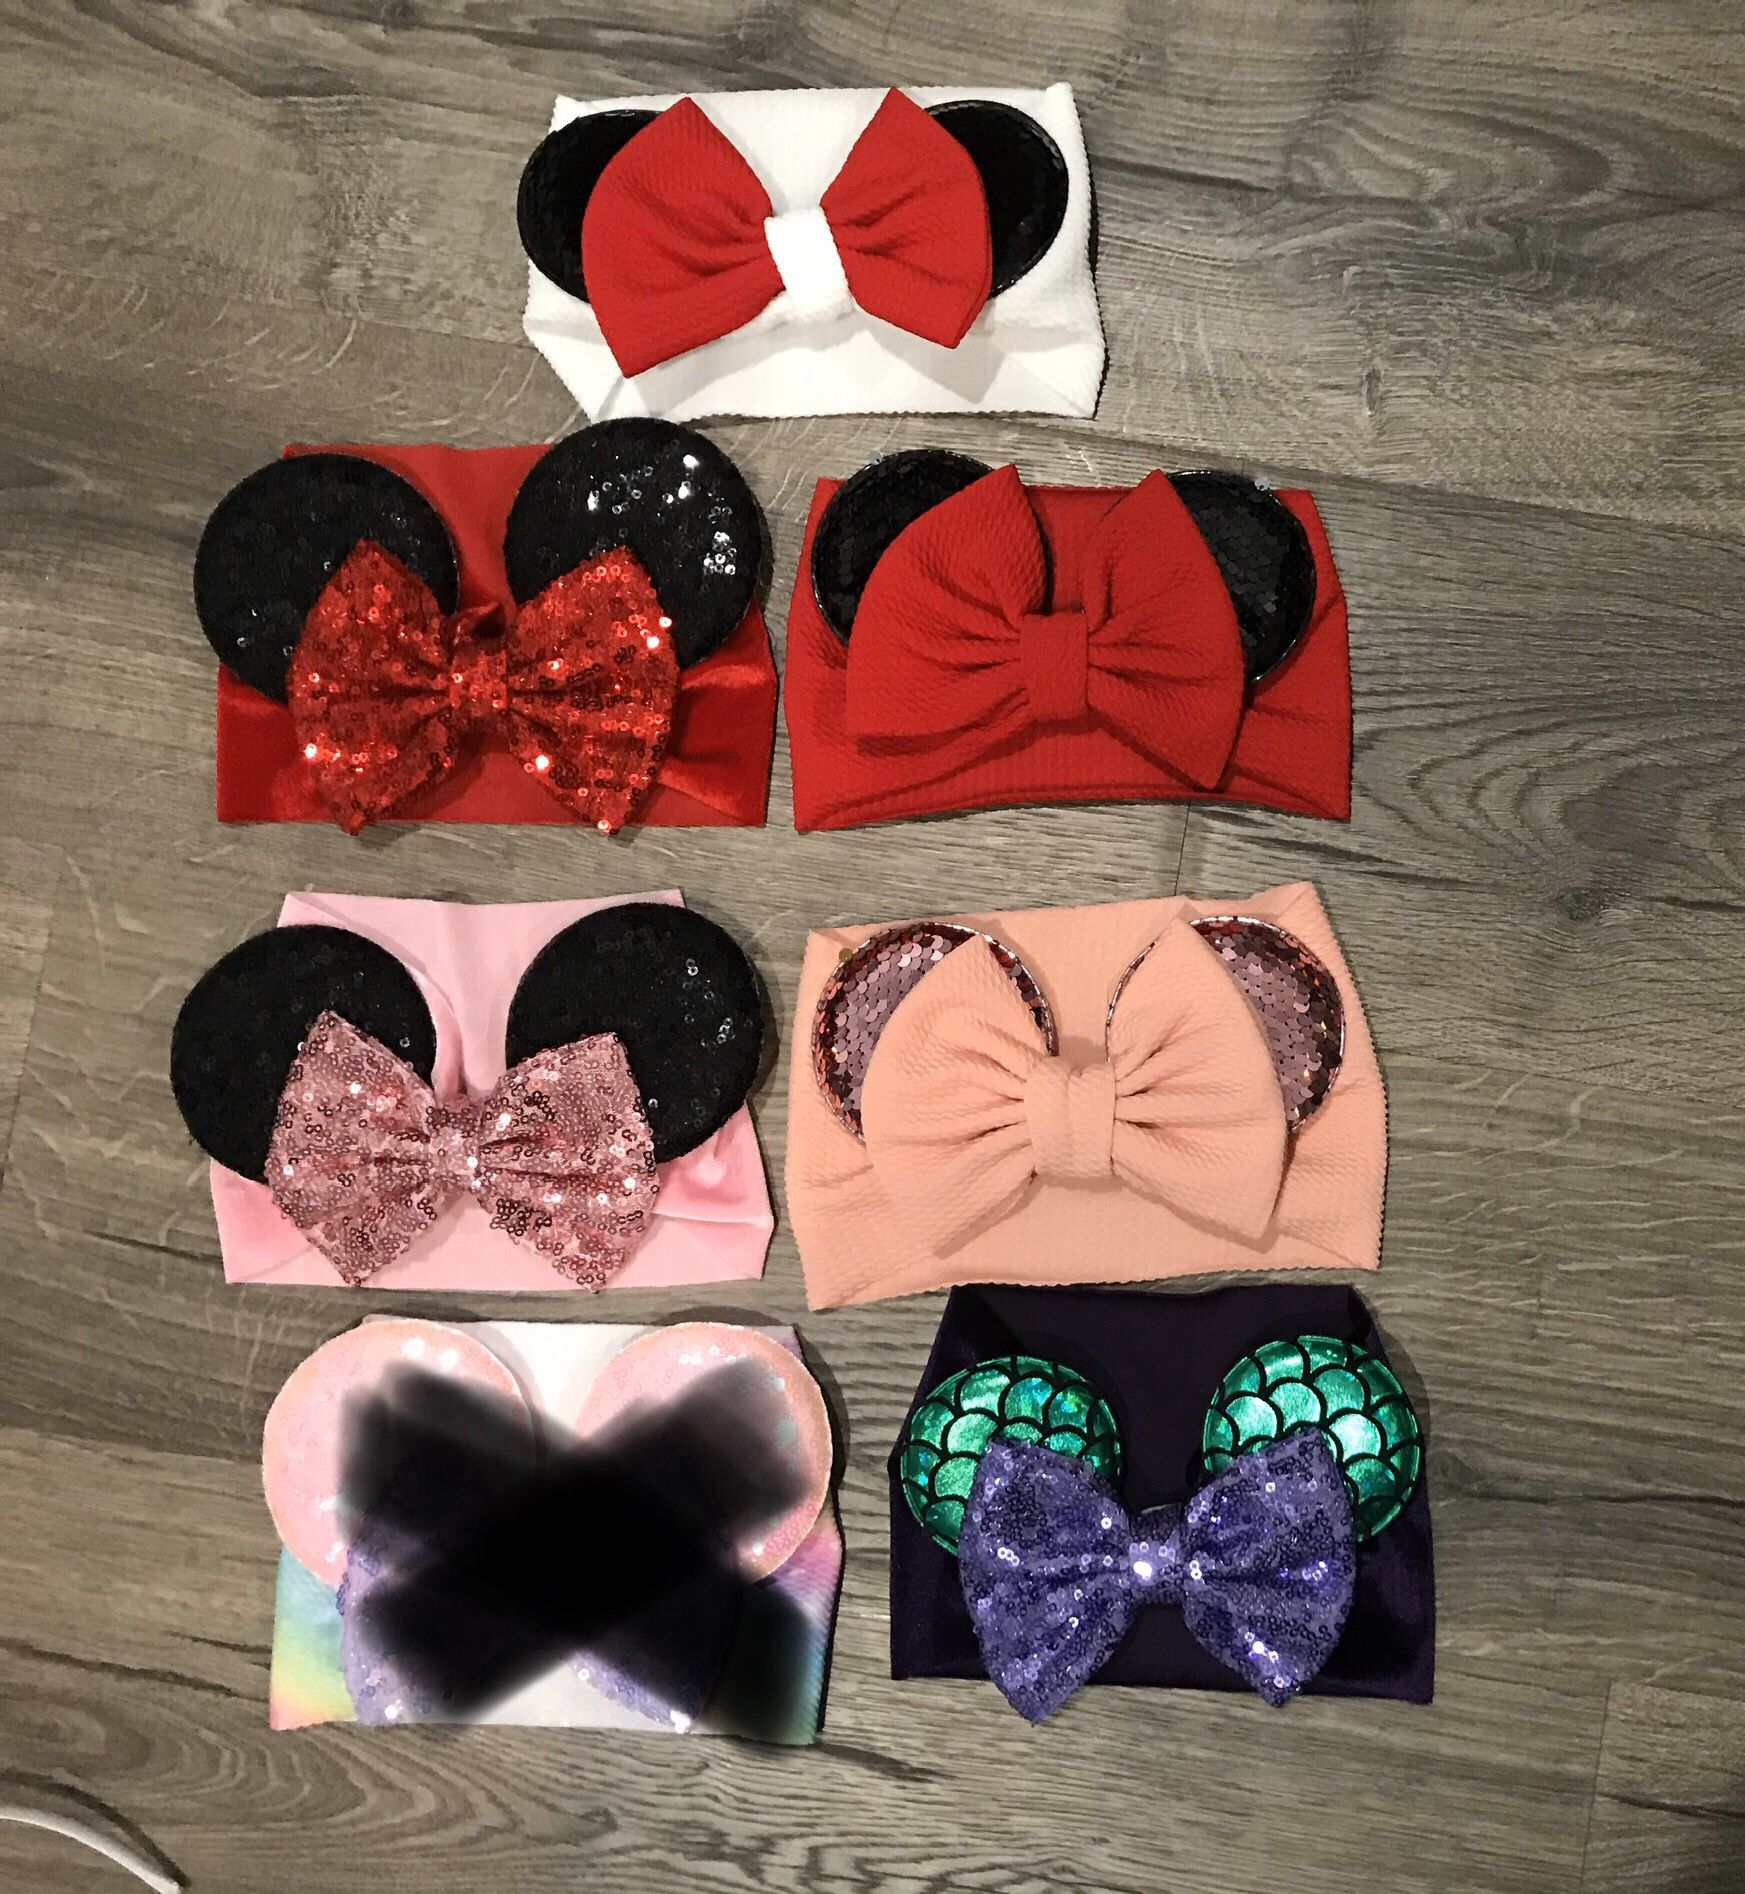 Minnie Mouse ear turbans $10